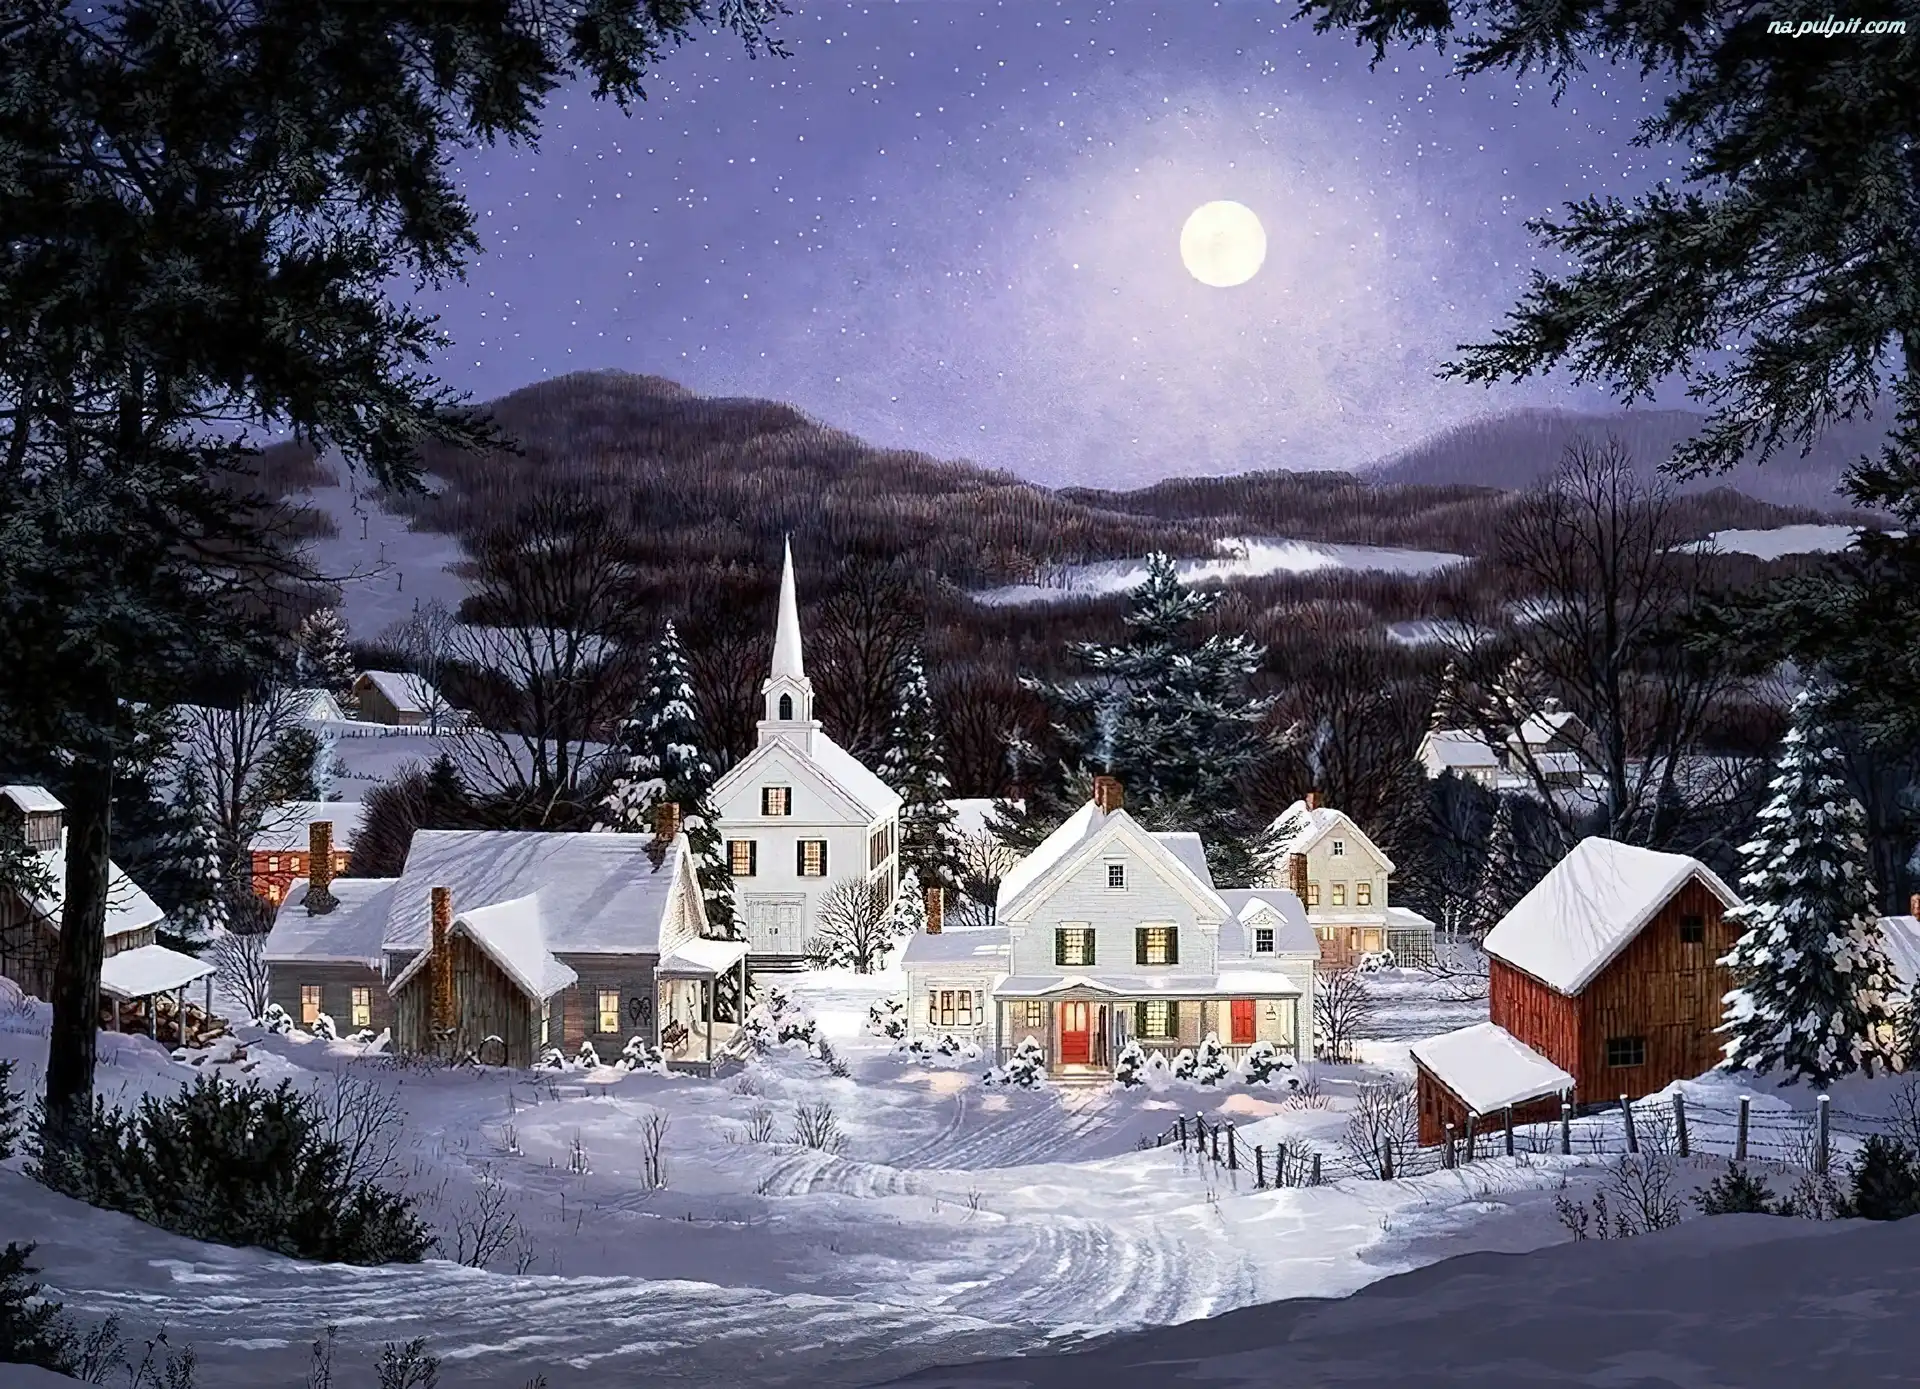 Narodzenie, Noc, Księżyc, Śnieg, Boże, Domki